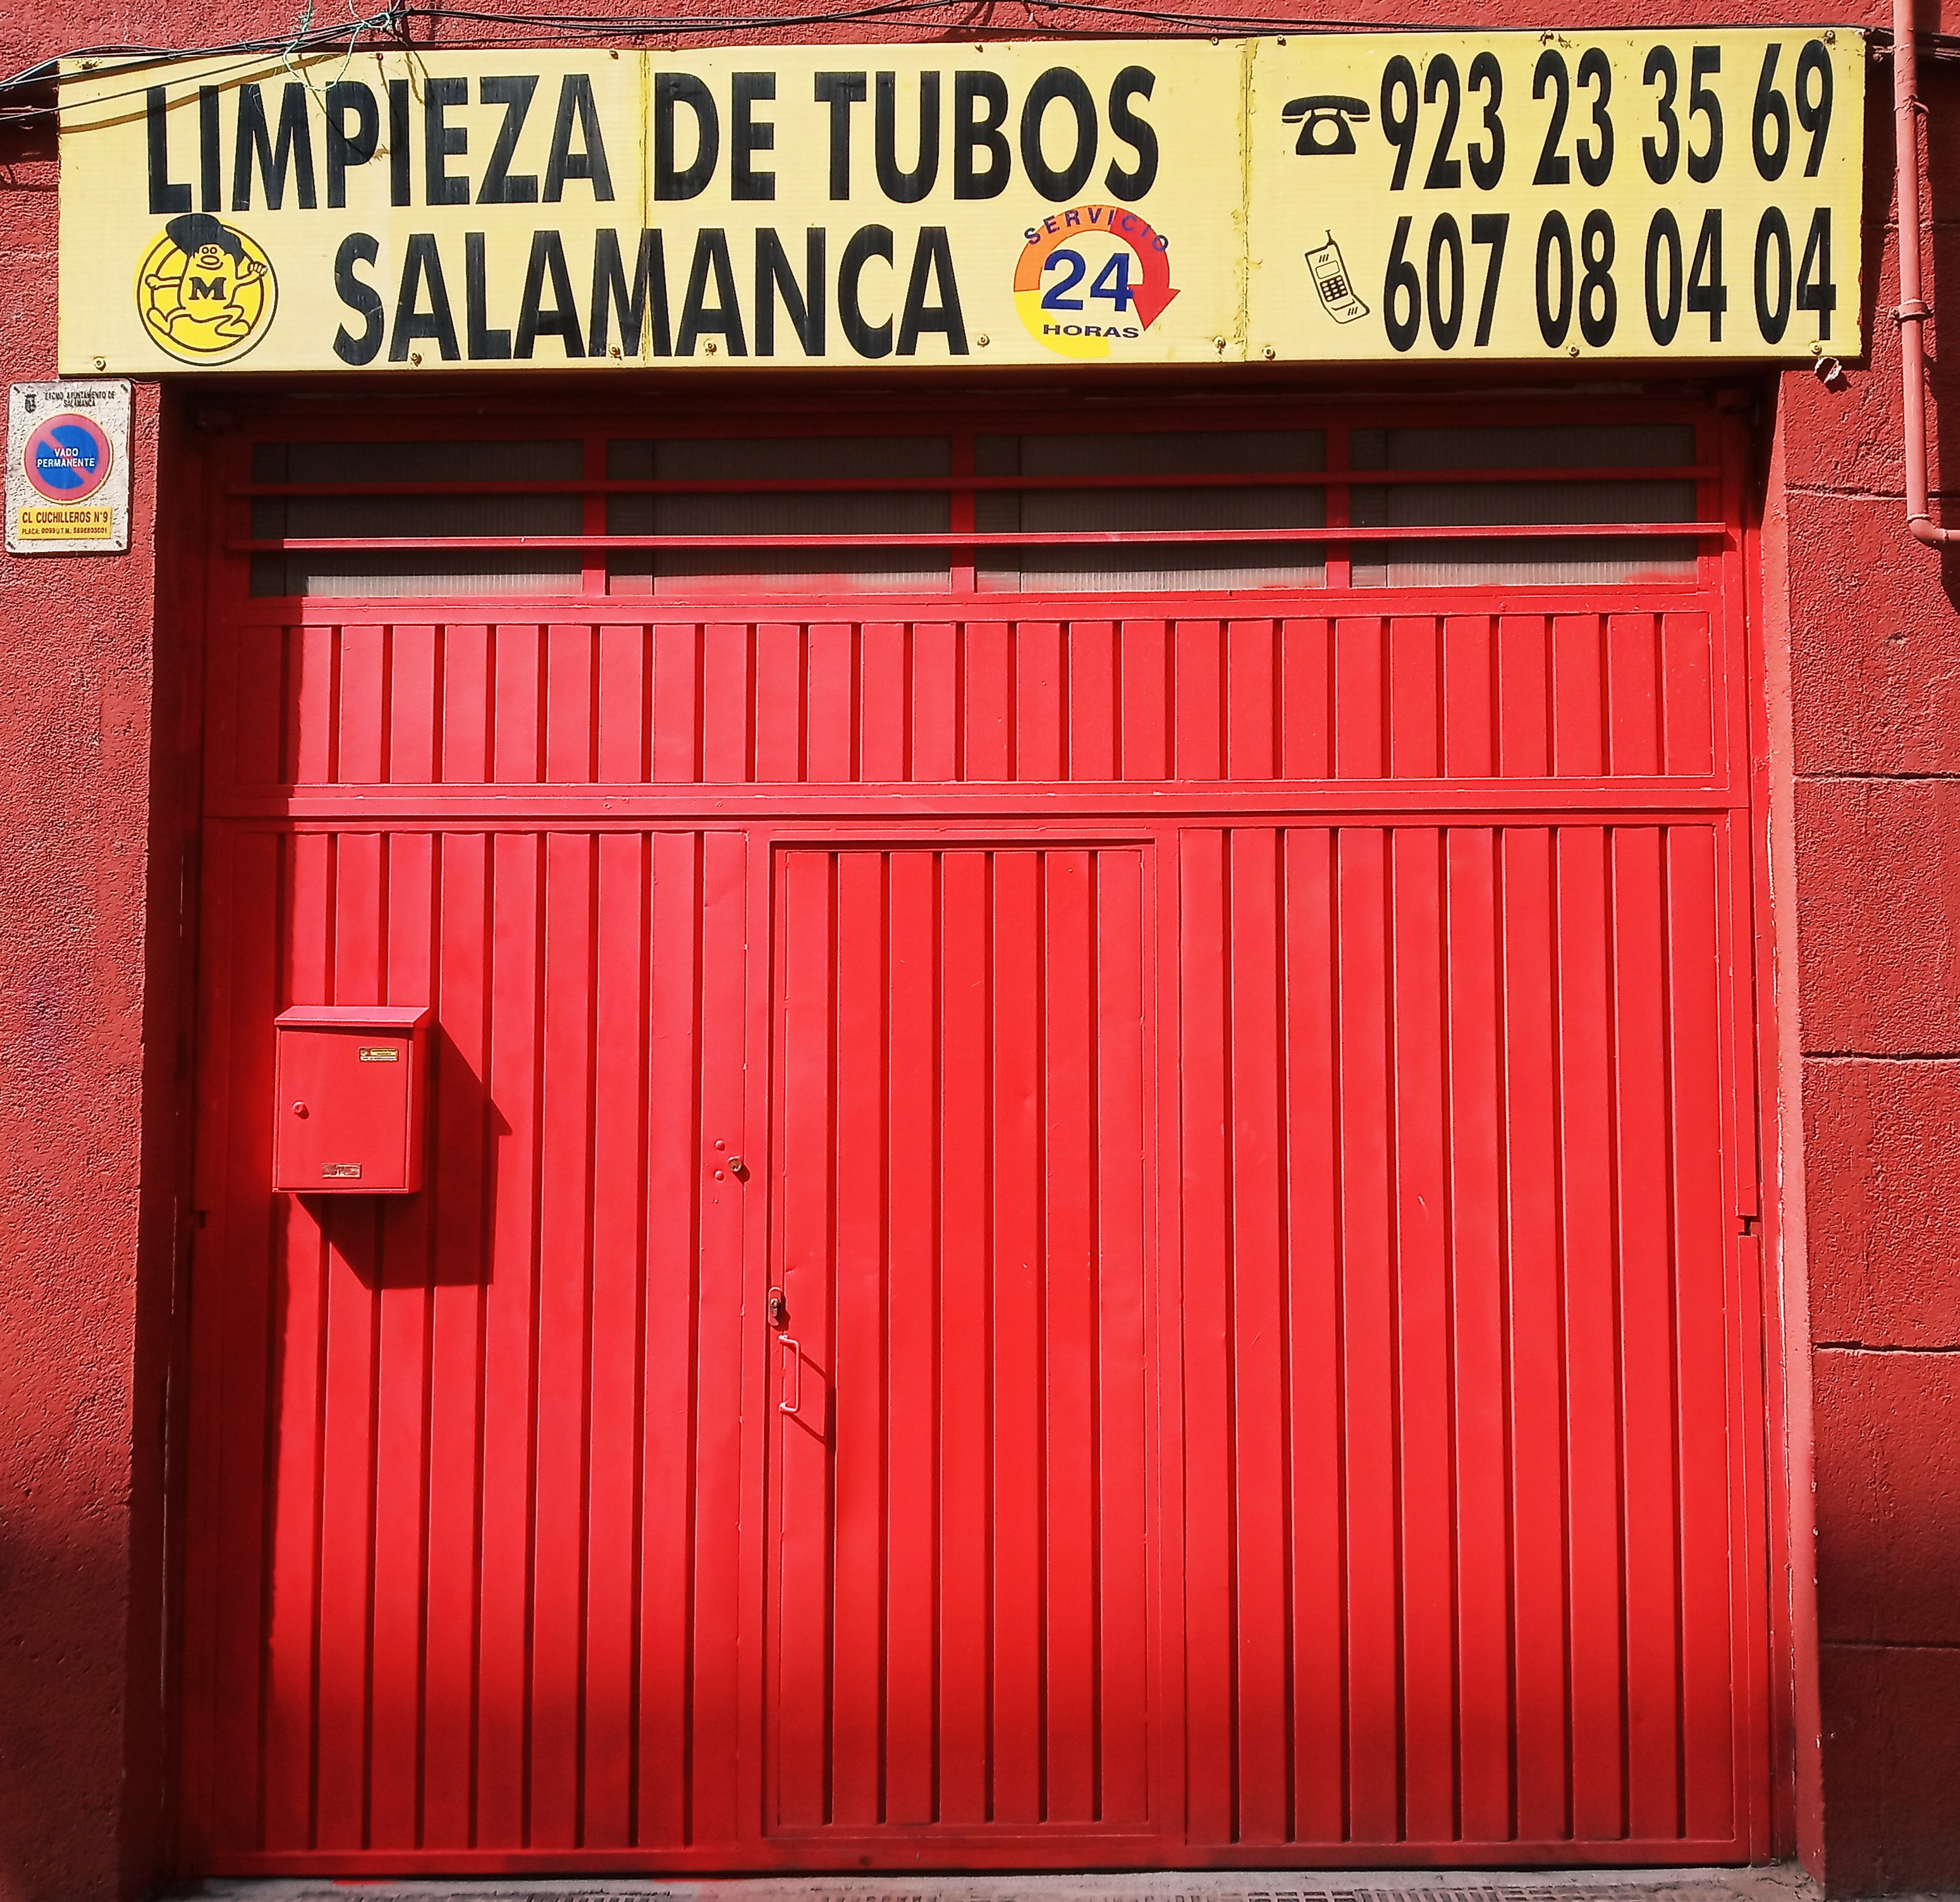 Limpieza De Tubos Salamanca fachada de la empresa